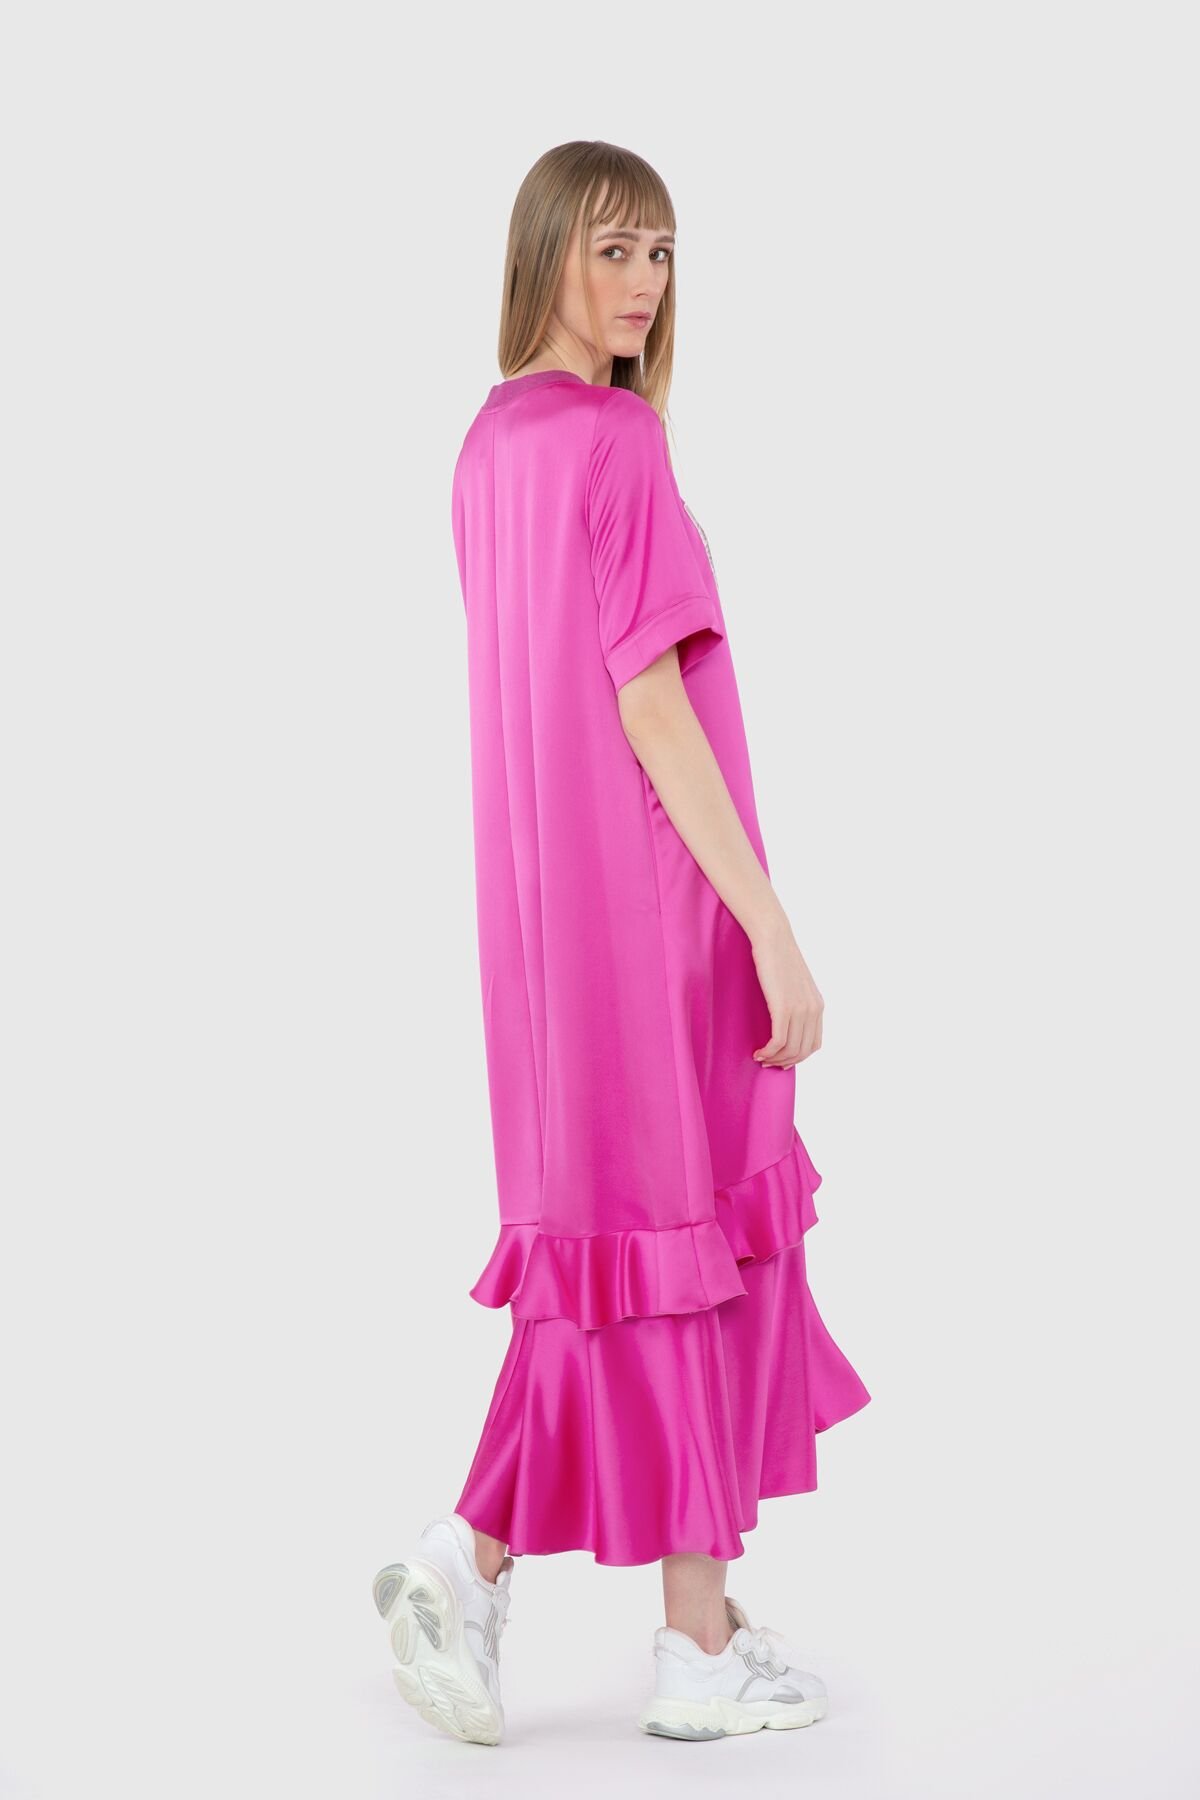 Baskı Detaylı Uzun Günlük Pembe Elbise